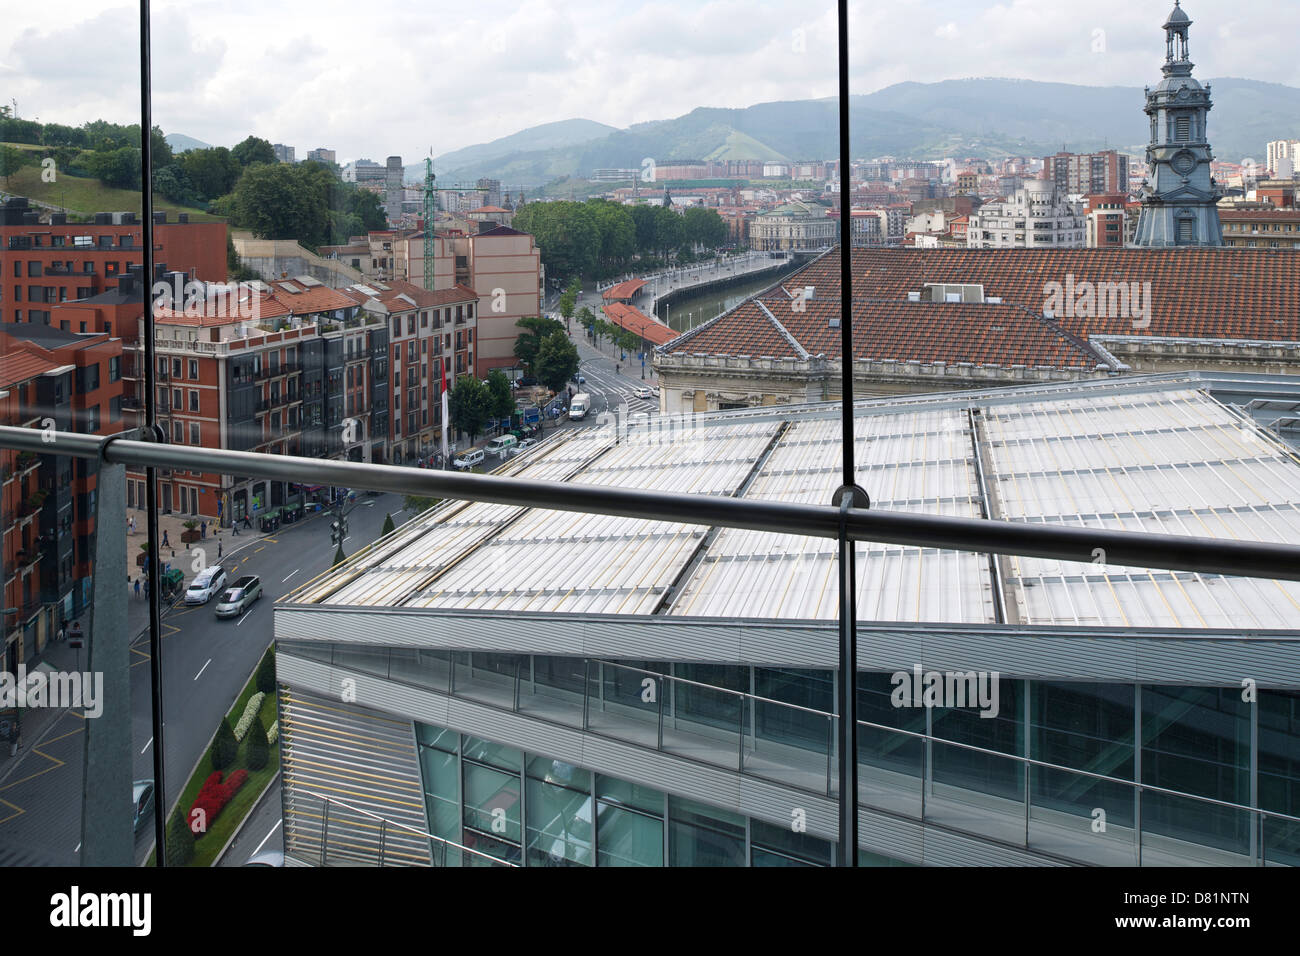 Conseil municipal de Bilbao, Bilbao, Espagne. Architecte : IMB Arquitectos , 2010. Cityscape de dernier étage. Banque D'Images